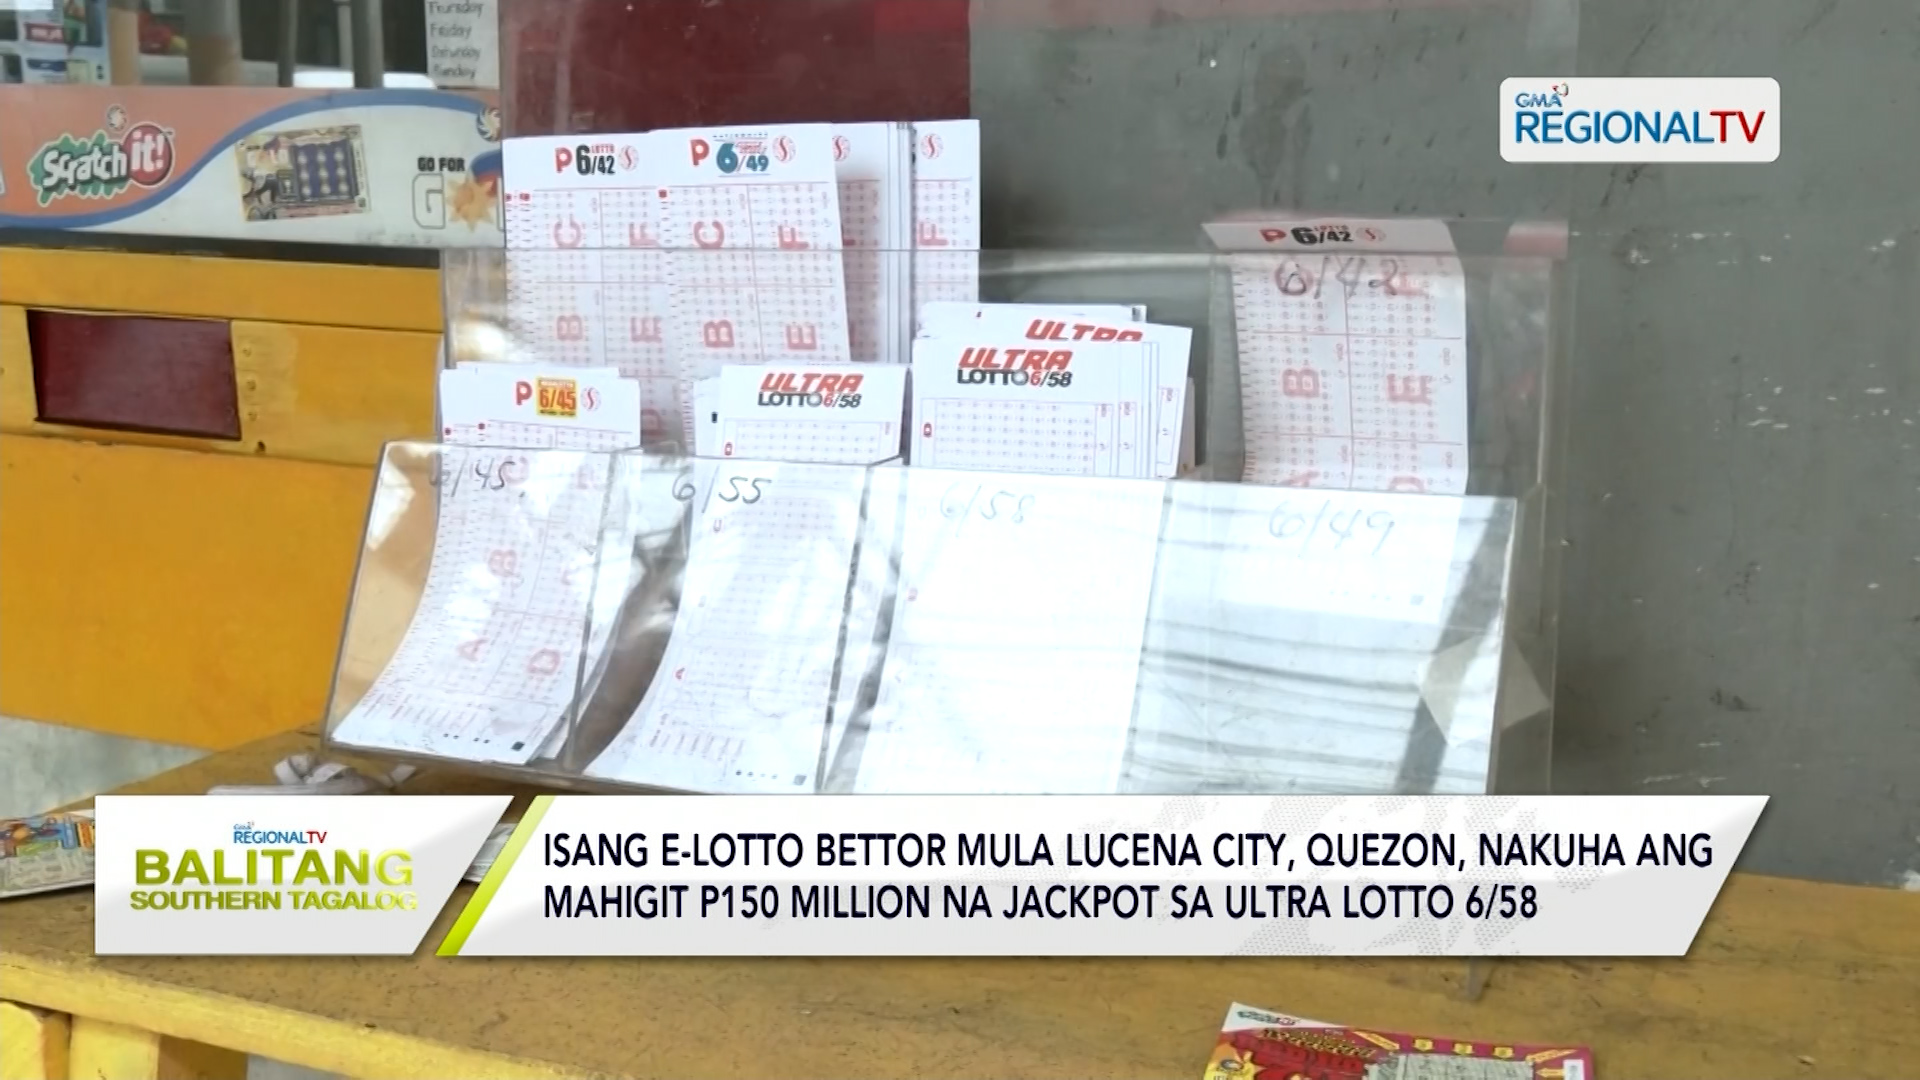 E-lotto bettor sa Lucena City, nakuha ang jackpot sa ultra lotto 6/58